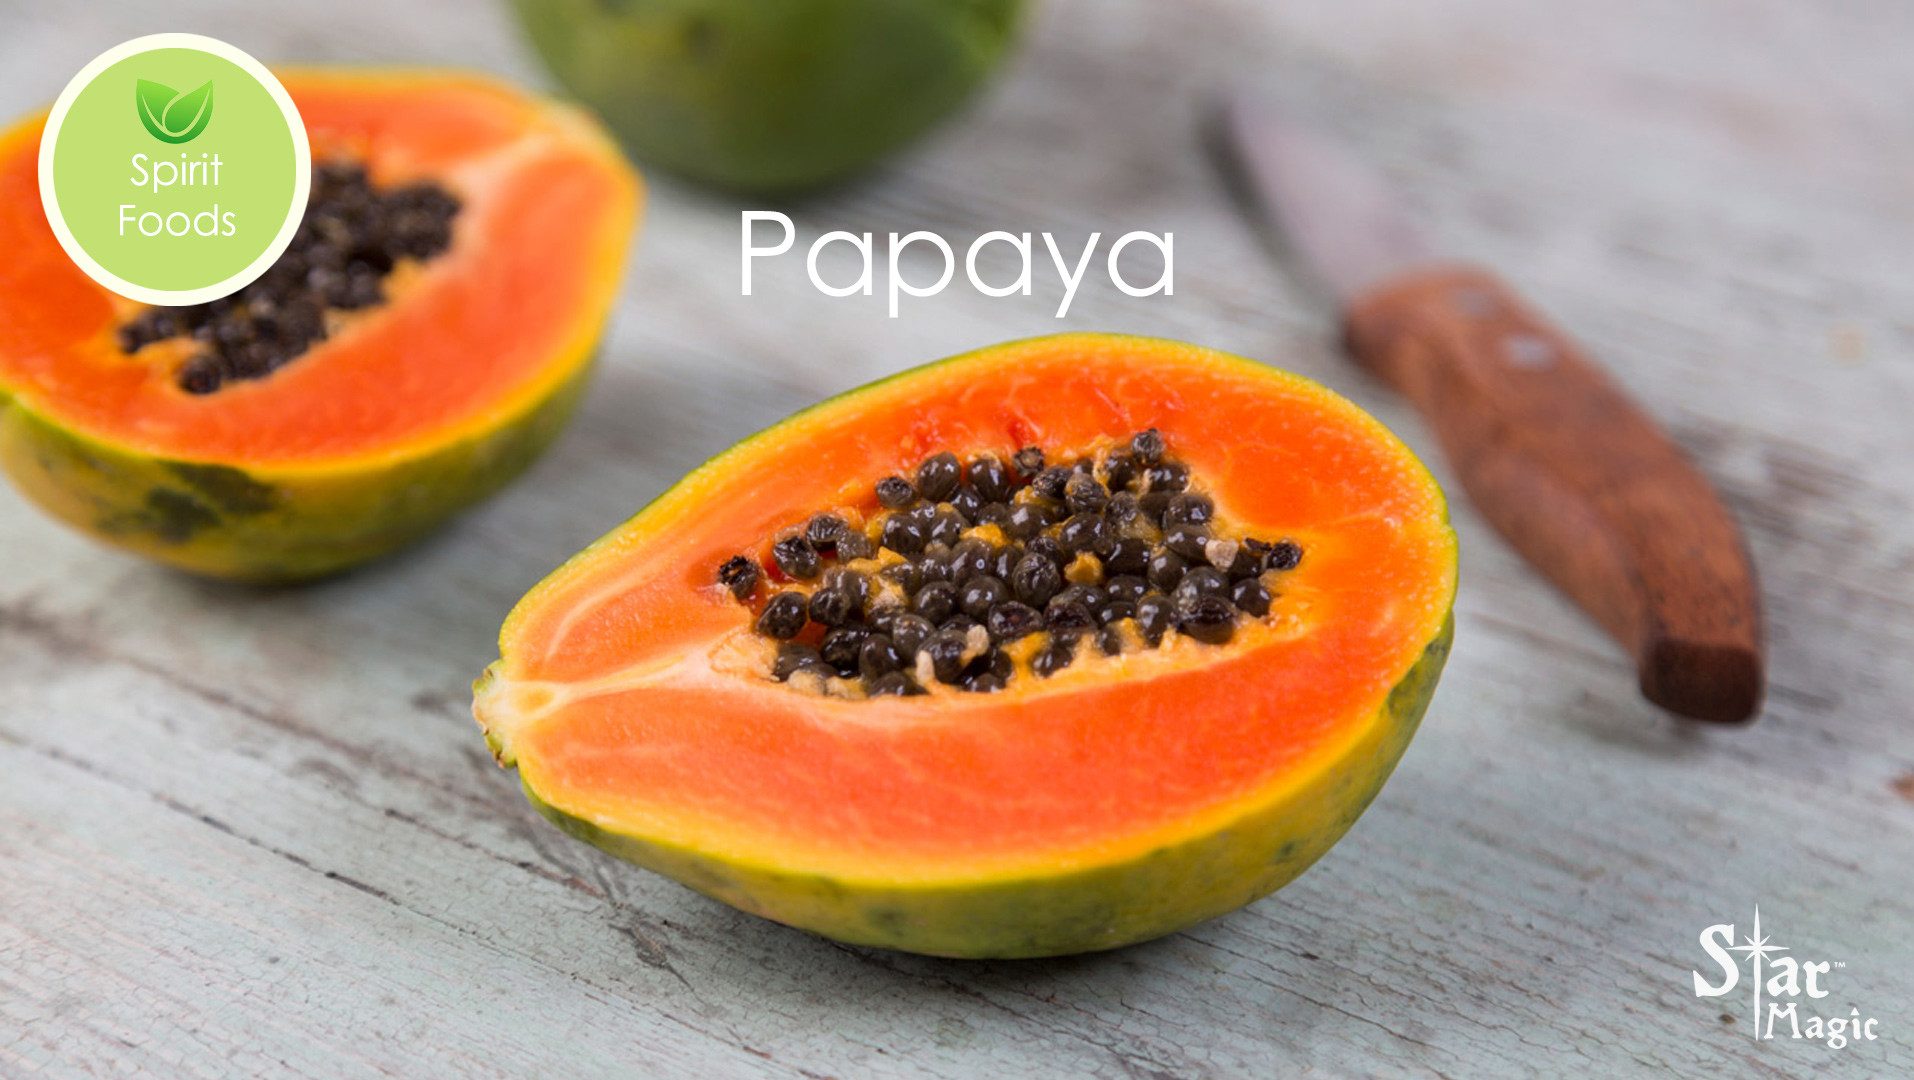 Spirit Food Papaya